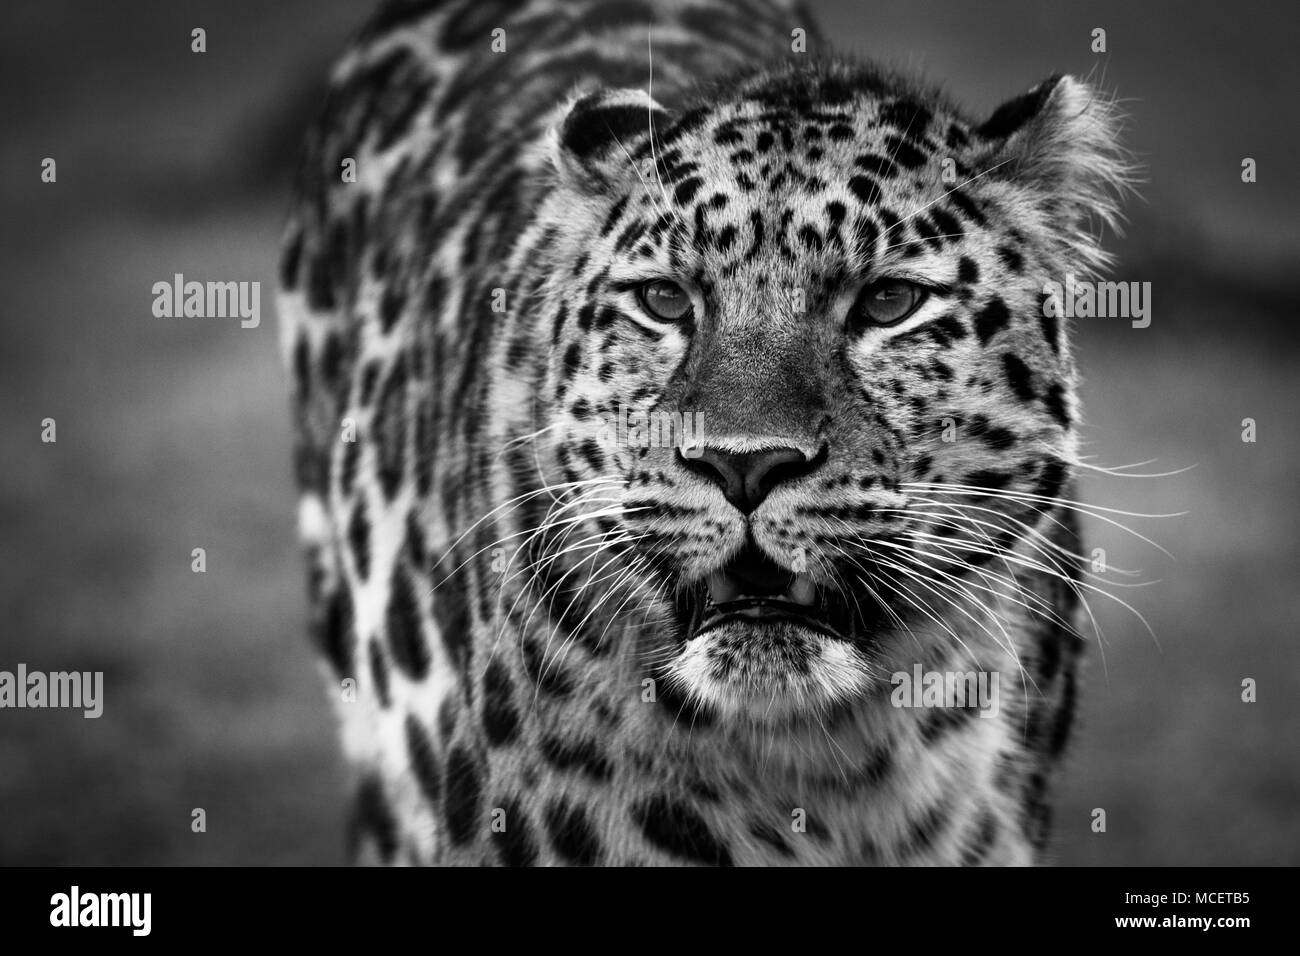 Leopard ganz nah in Schwarz & Weiß Stockfoto